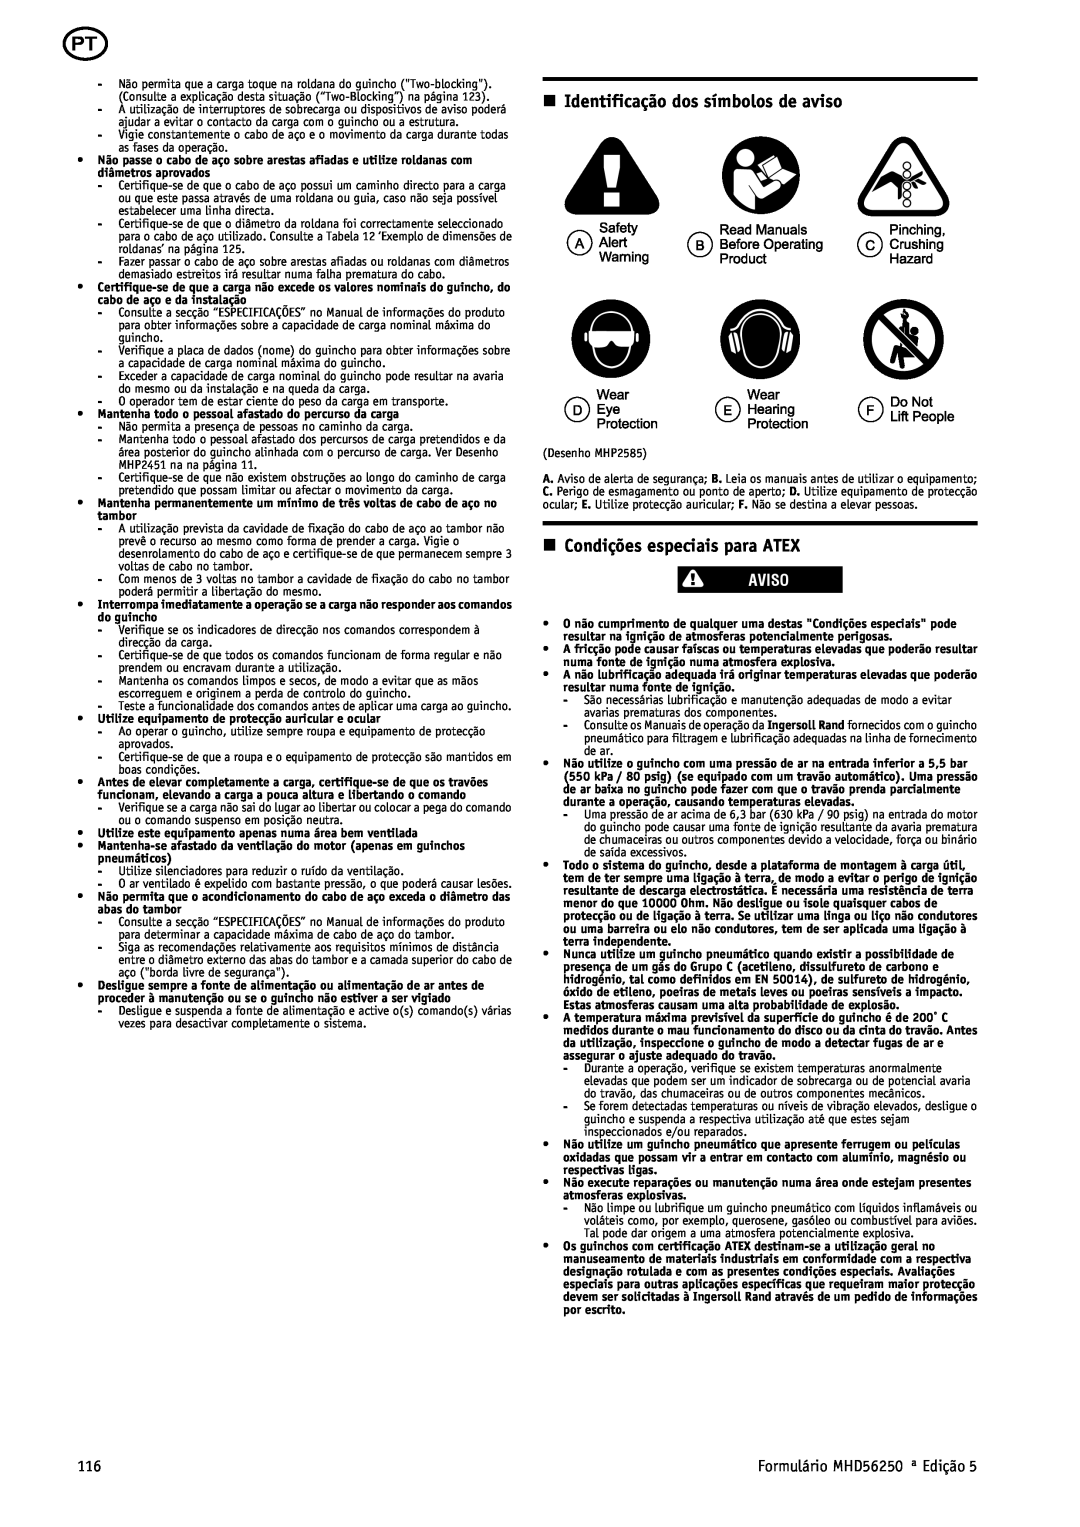 Ingersoll-Rand MHD56250 manual n Identificação dos símbolos de aviso, n Condições especiais para ATEX, Aviso 